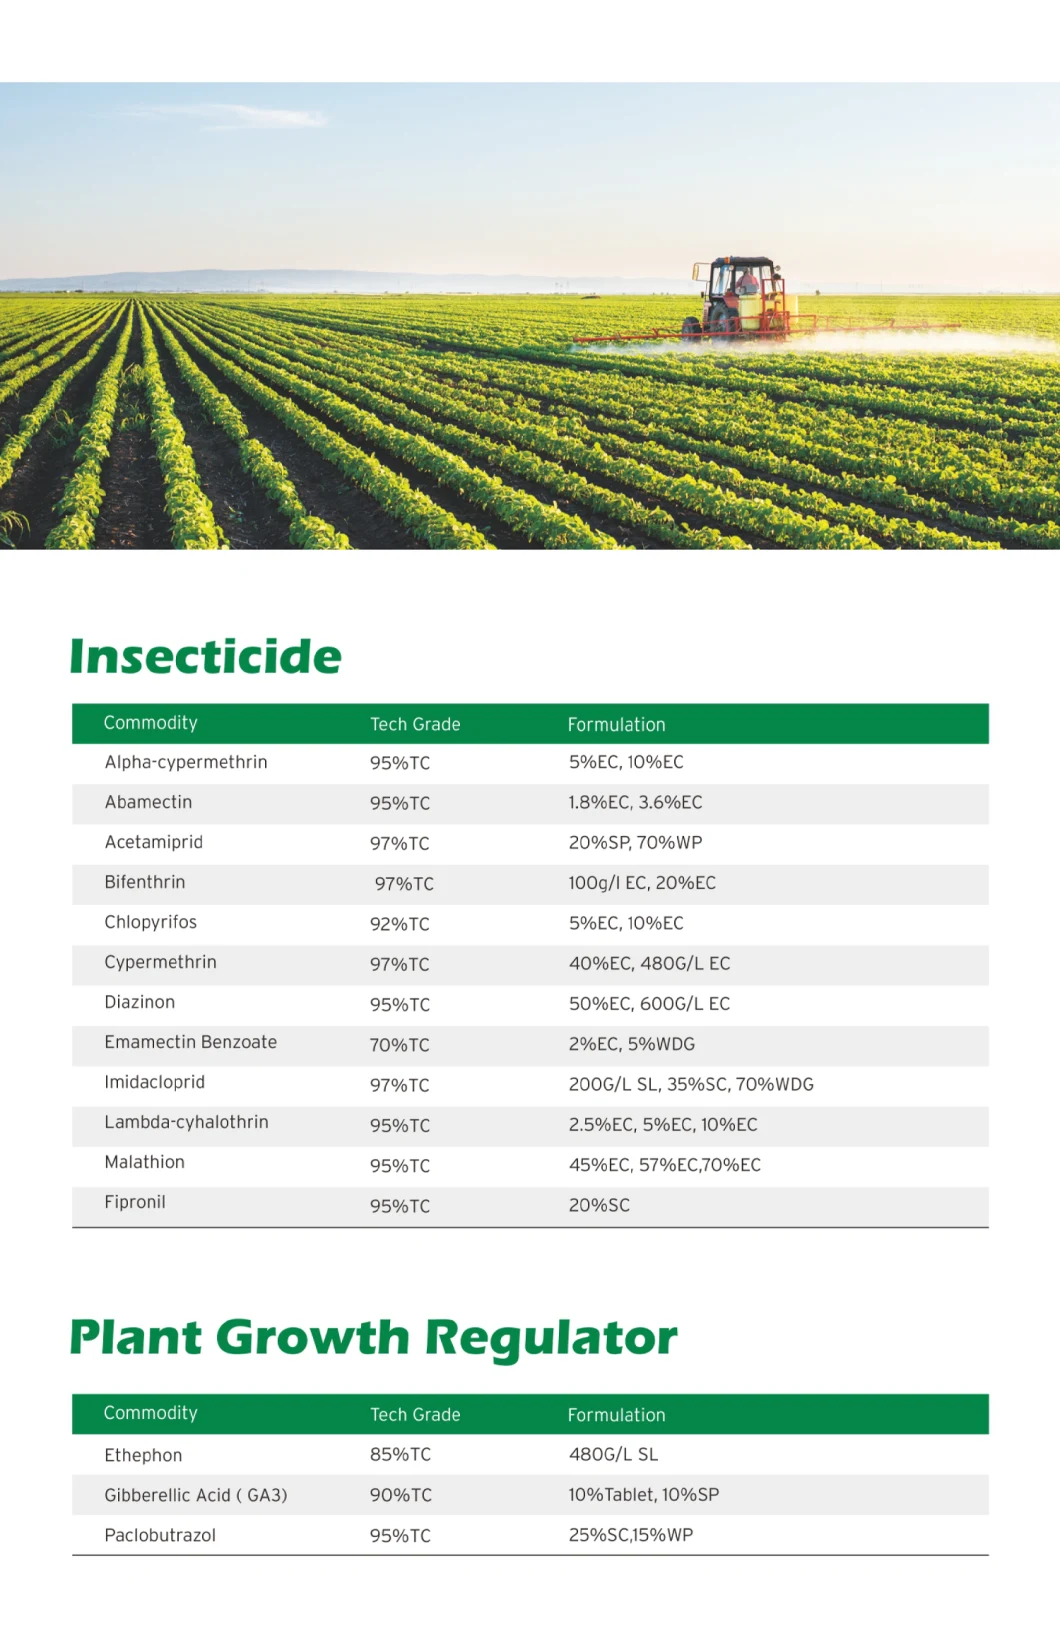 Indole-3-Butyric Acid (IBA) Promote Plant Rooting Plant Growth Regulator